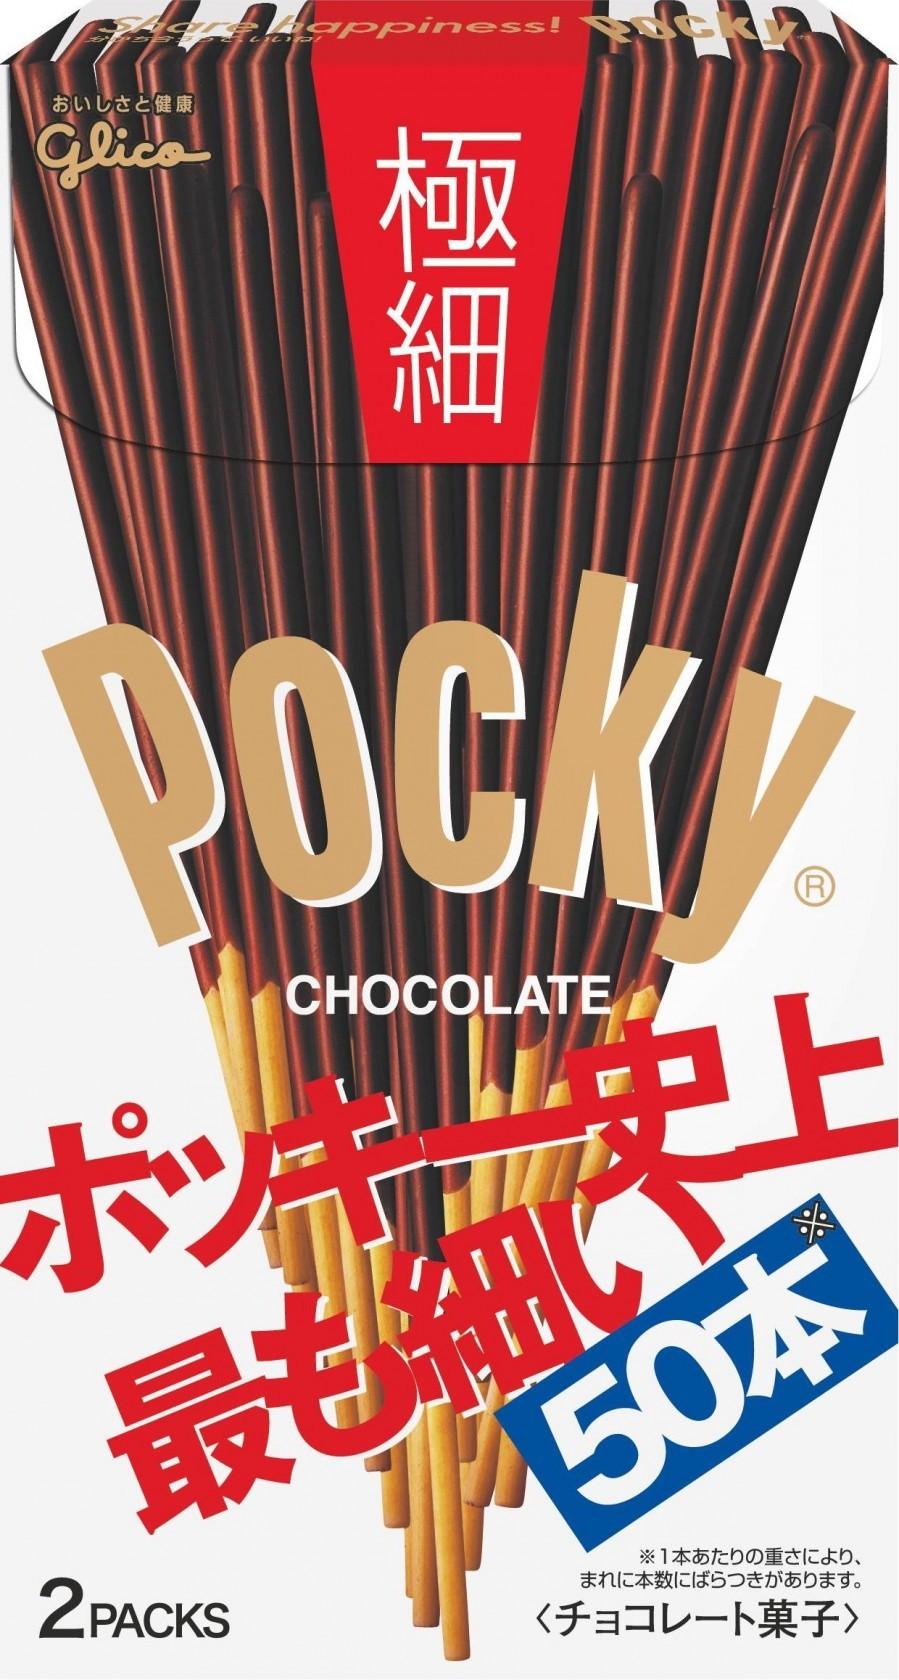 glico-pocky-chocolate-stick